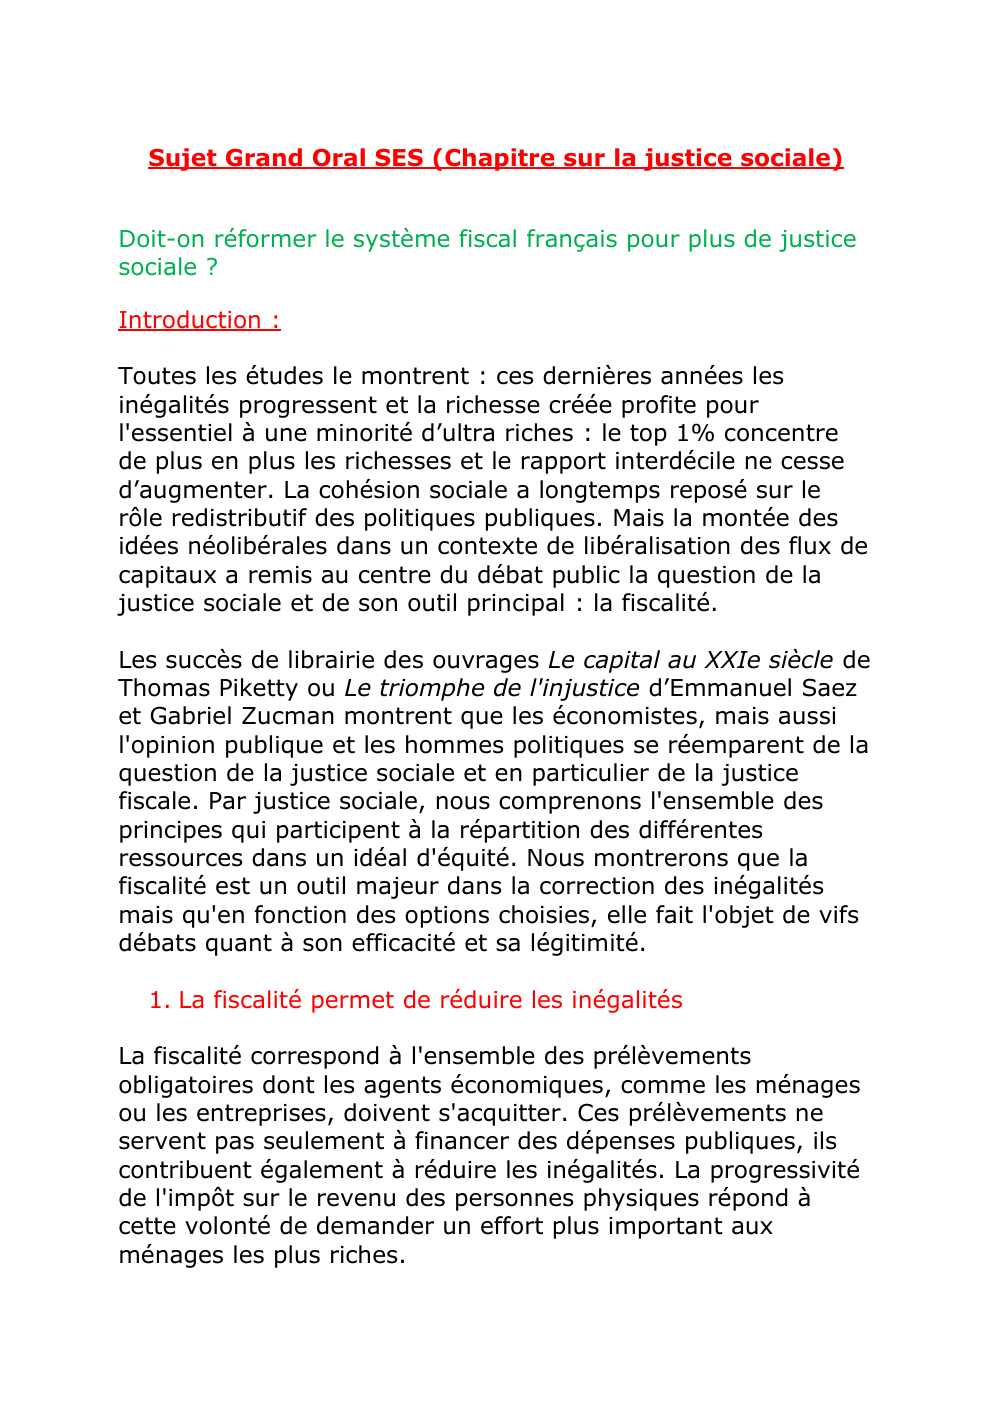 Prévisualisation du document Sujet Grand Oral: Doit-on réformer le système fiscal français pour plus de justice sociale ?